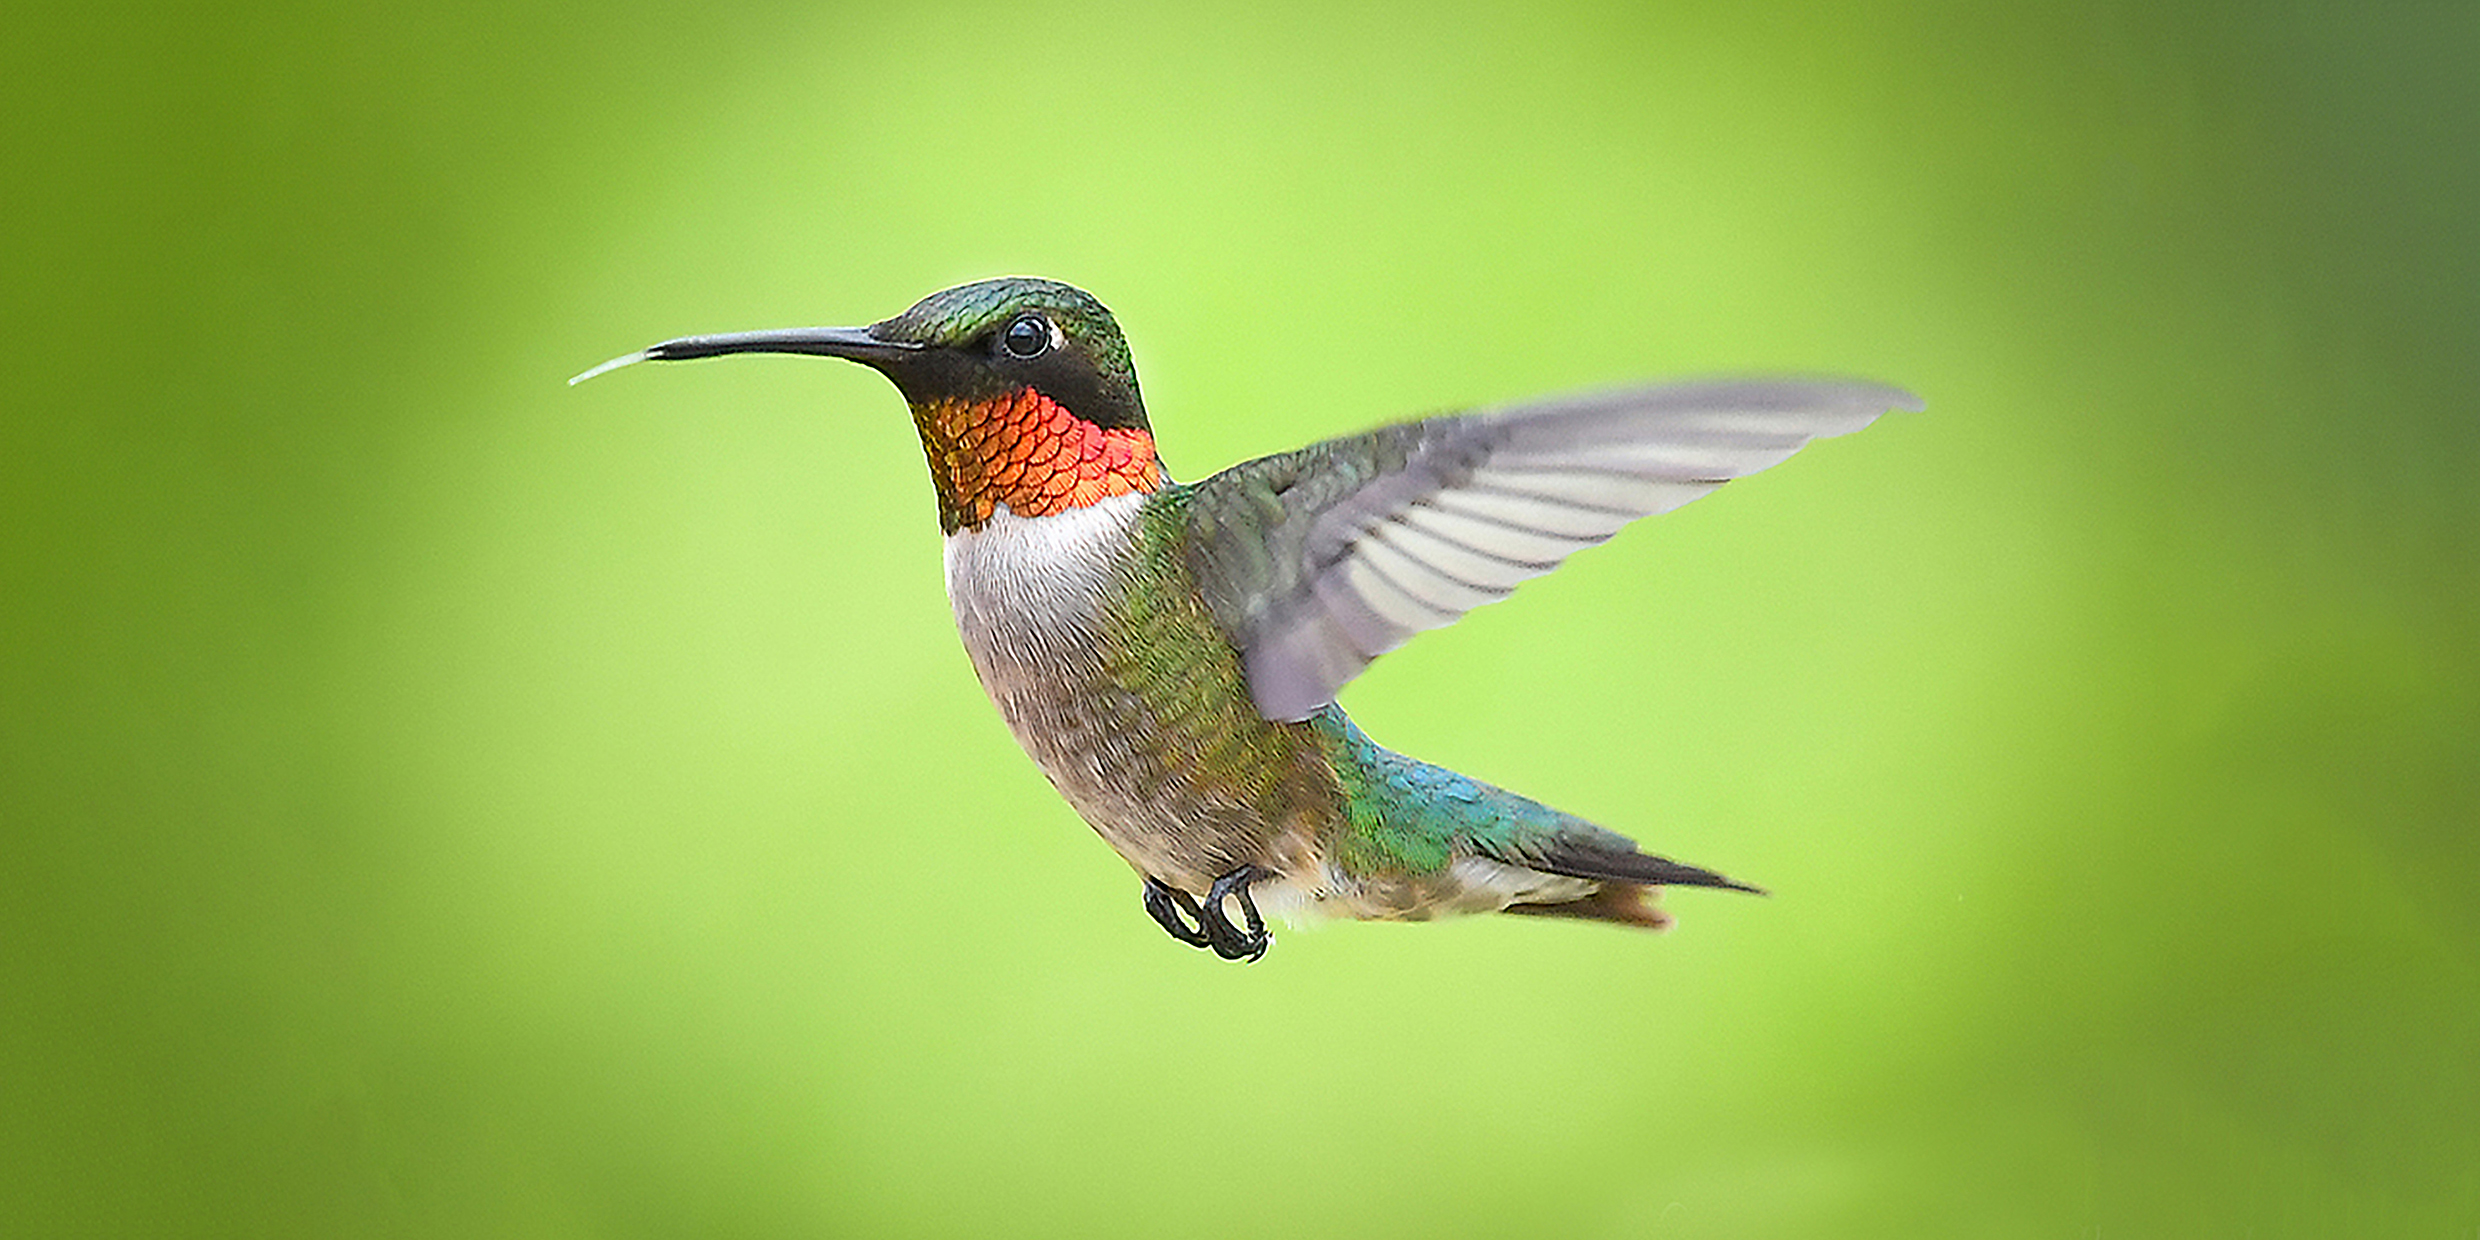 Image of a hummingbird in flight